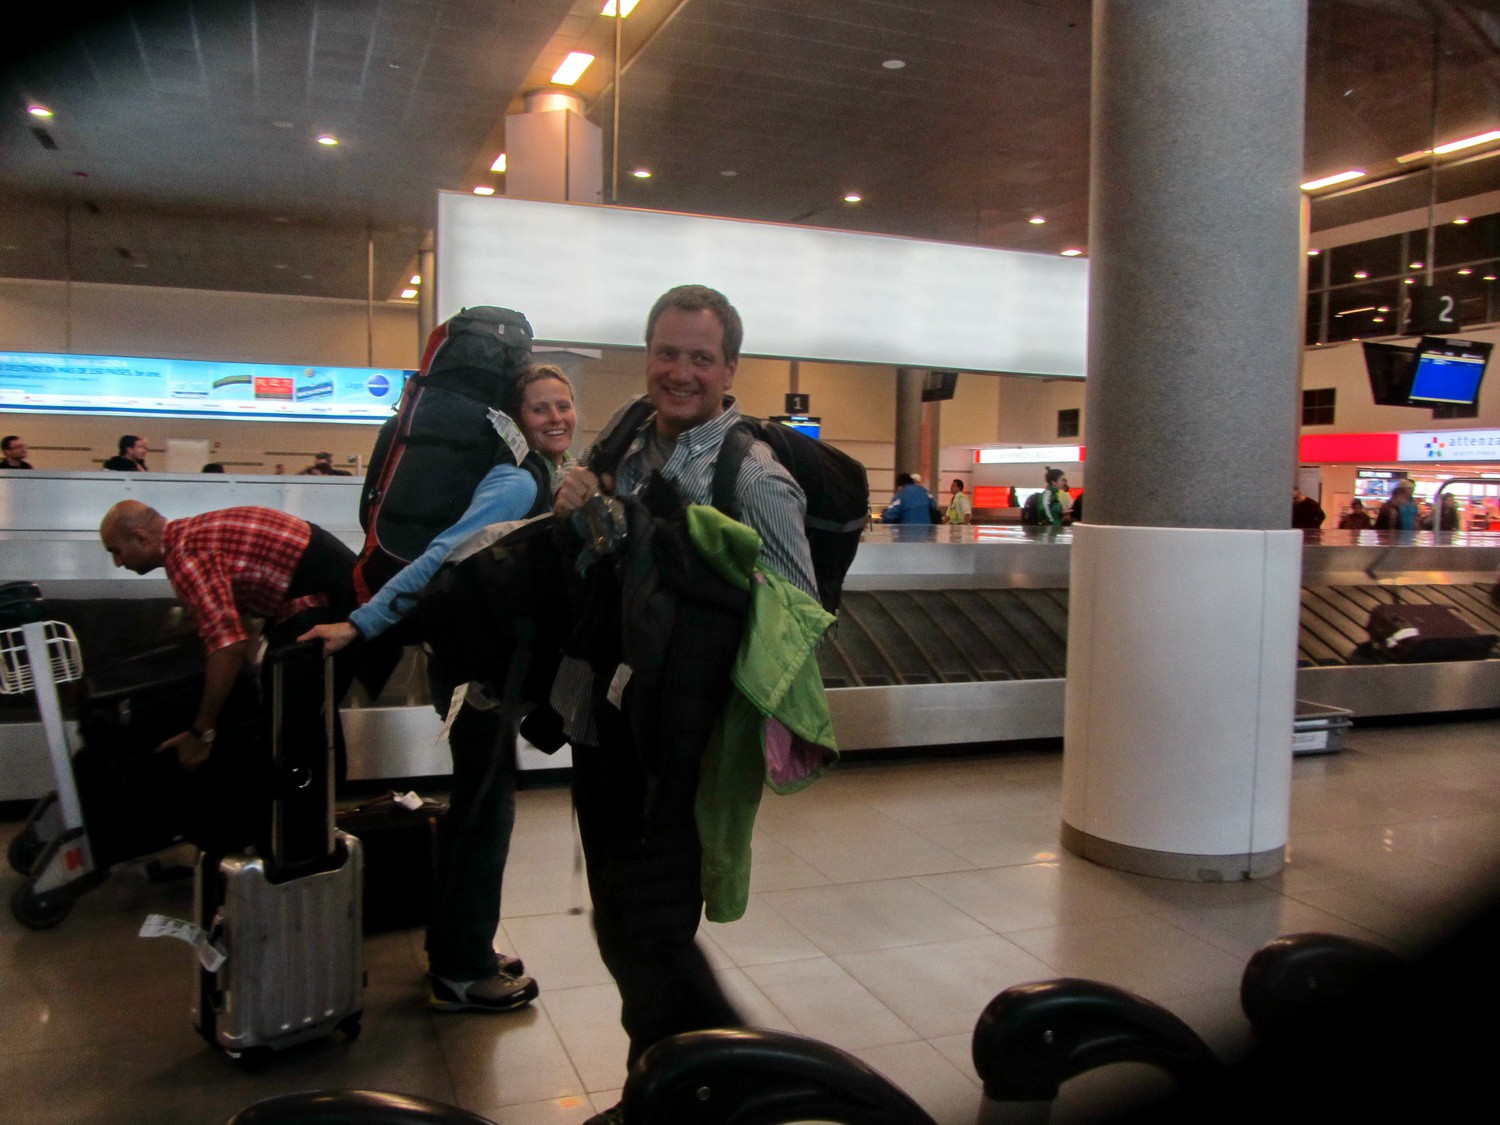 Vera and Kai arriving in Bogota